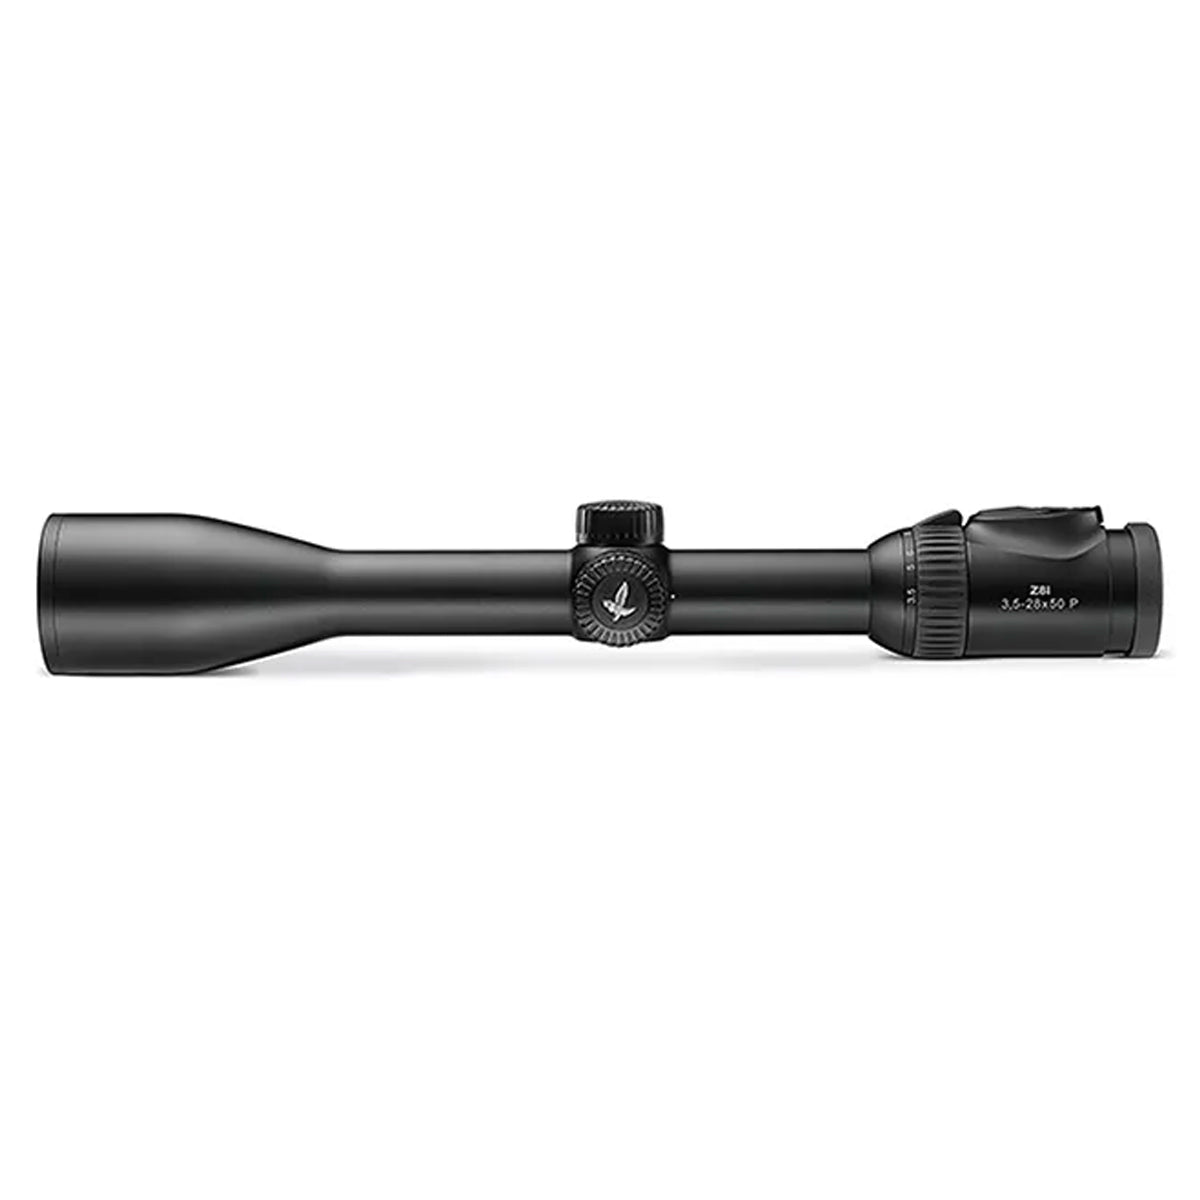 Swarovski Z8i 3.5-28x50 4A-I Riflescope by Swarovski Optik | Optics - goHUNT Shop